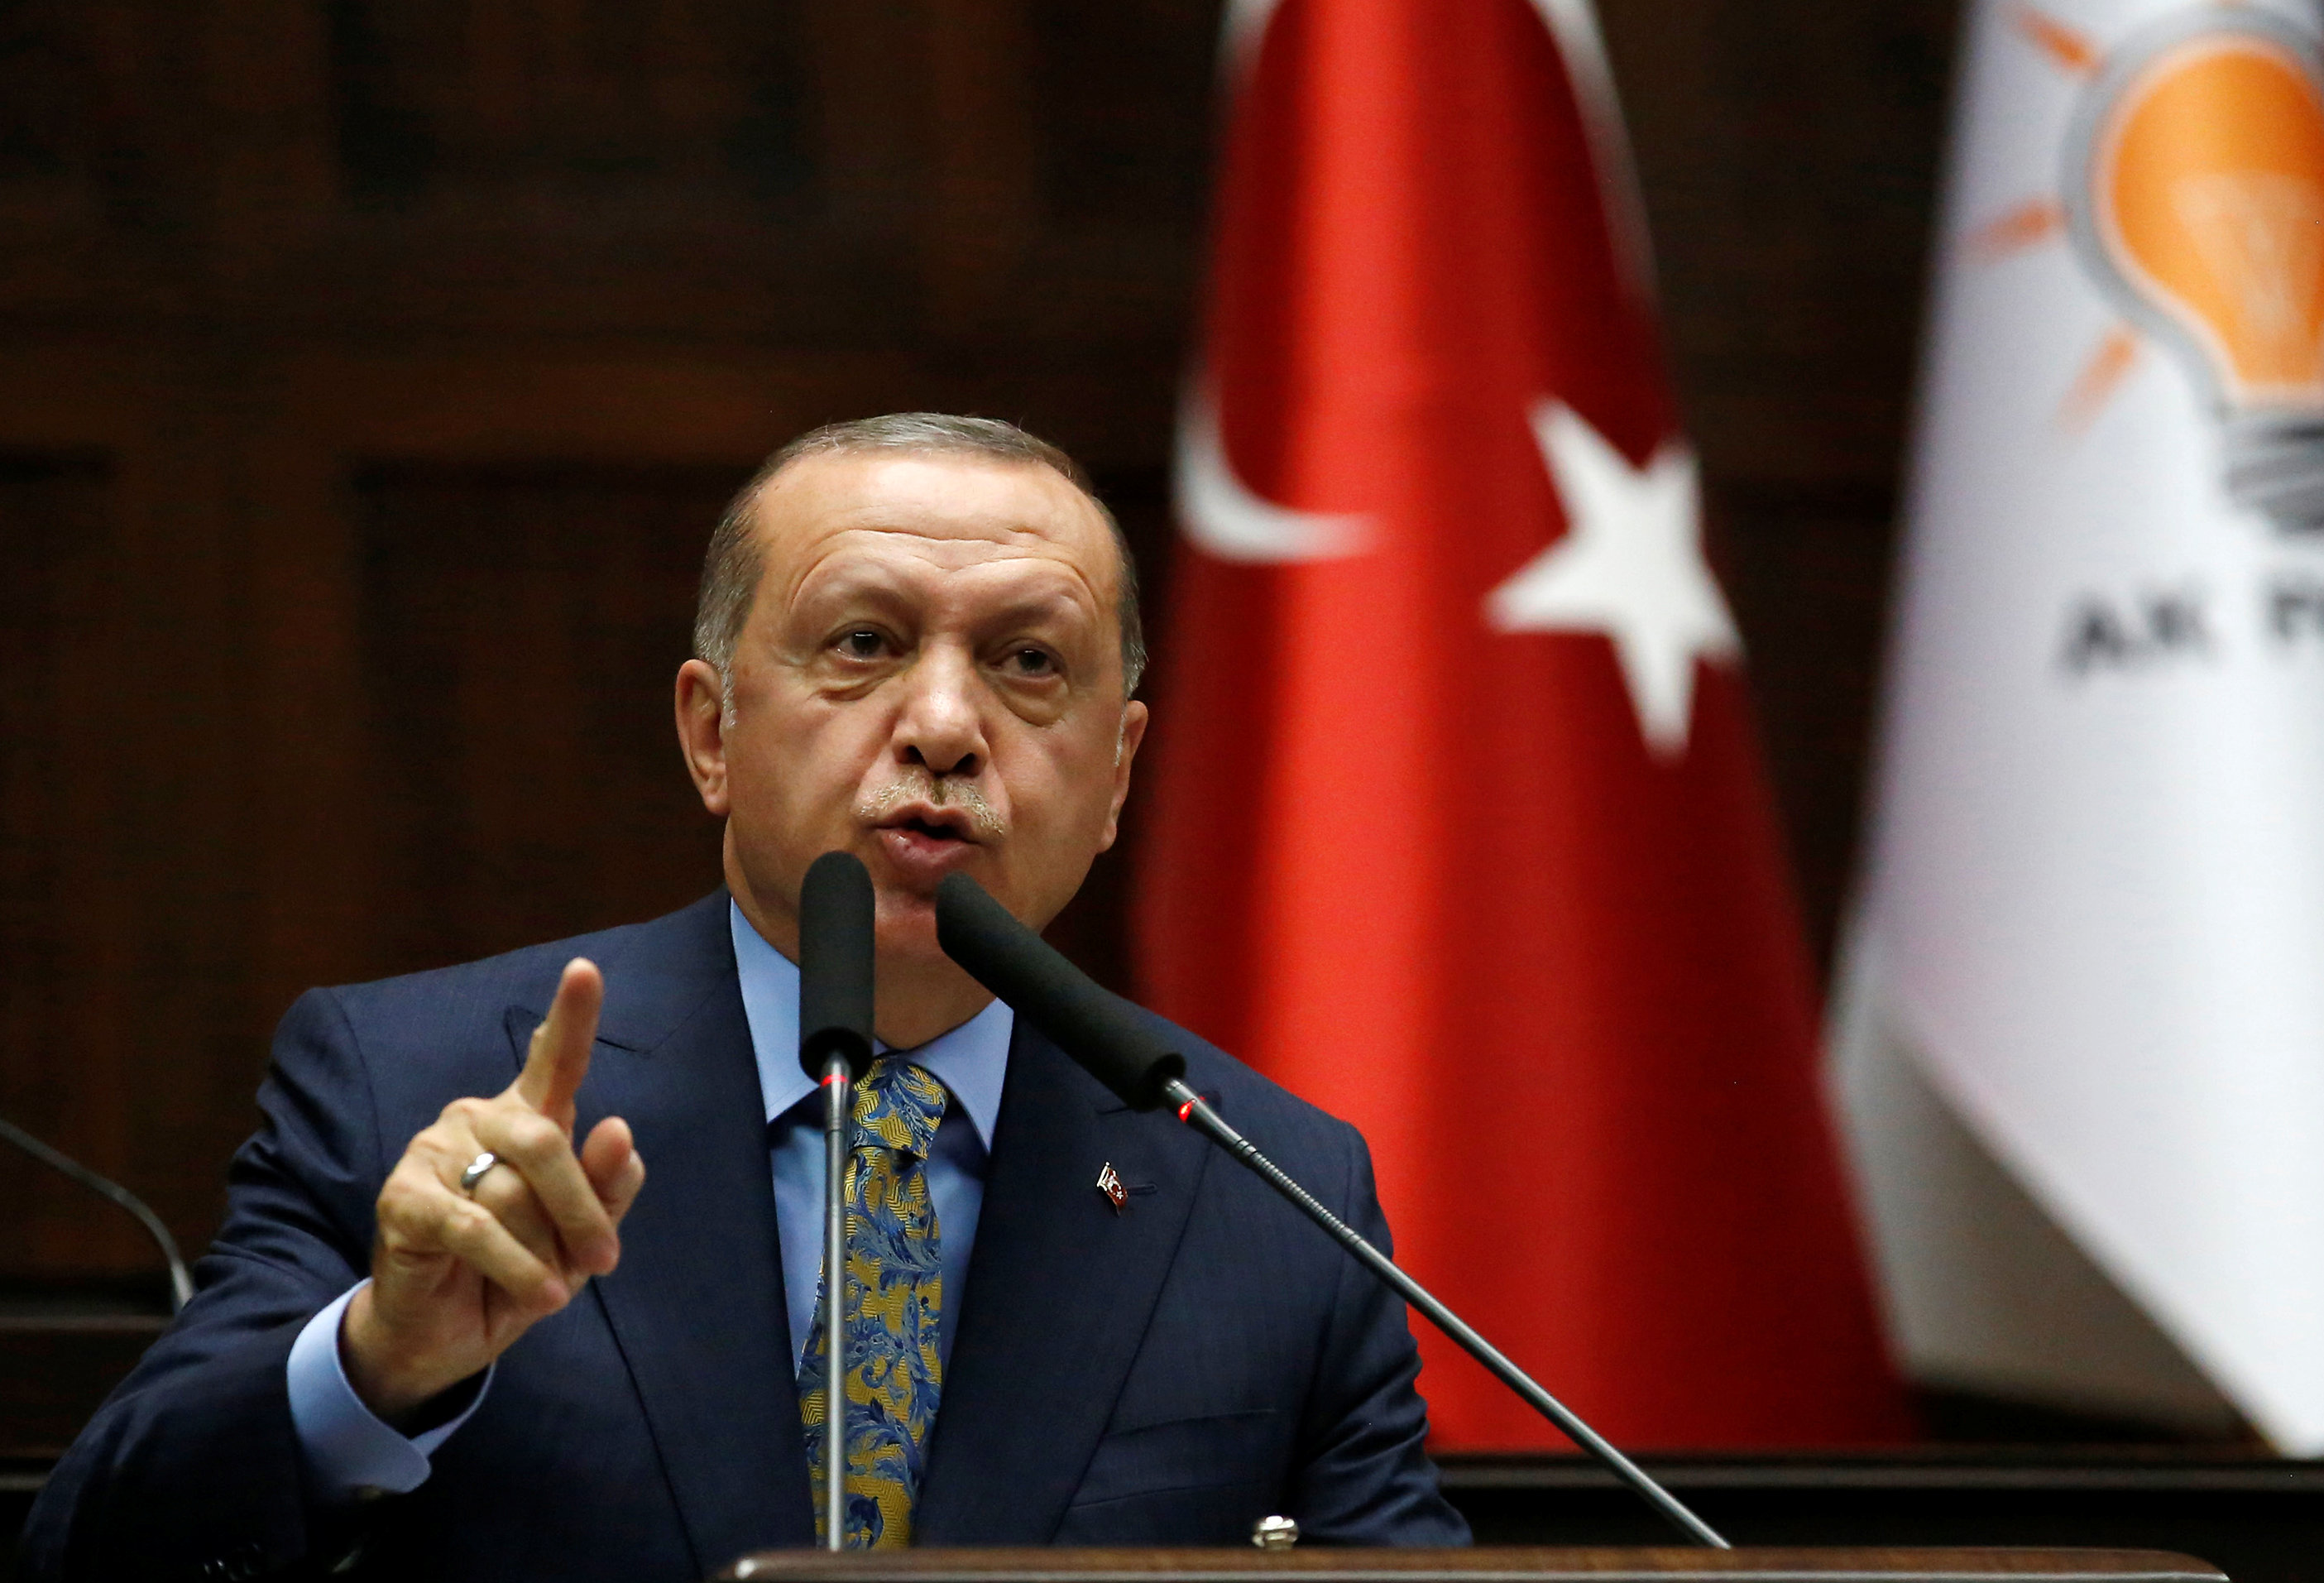 La ofensiva en Siria se reanudará el martes si el acuerdo no se respeta, amenaza Erdogan